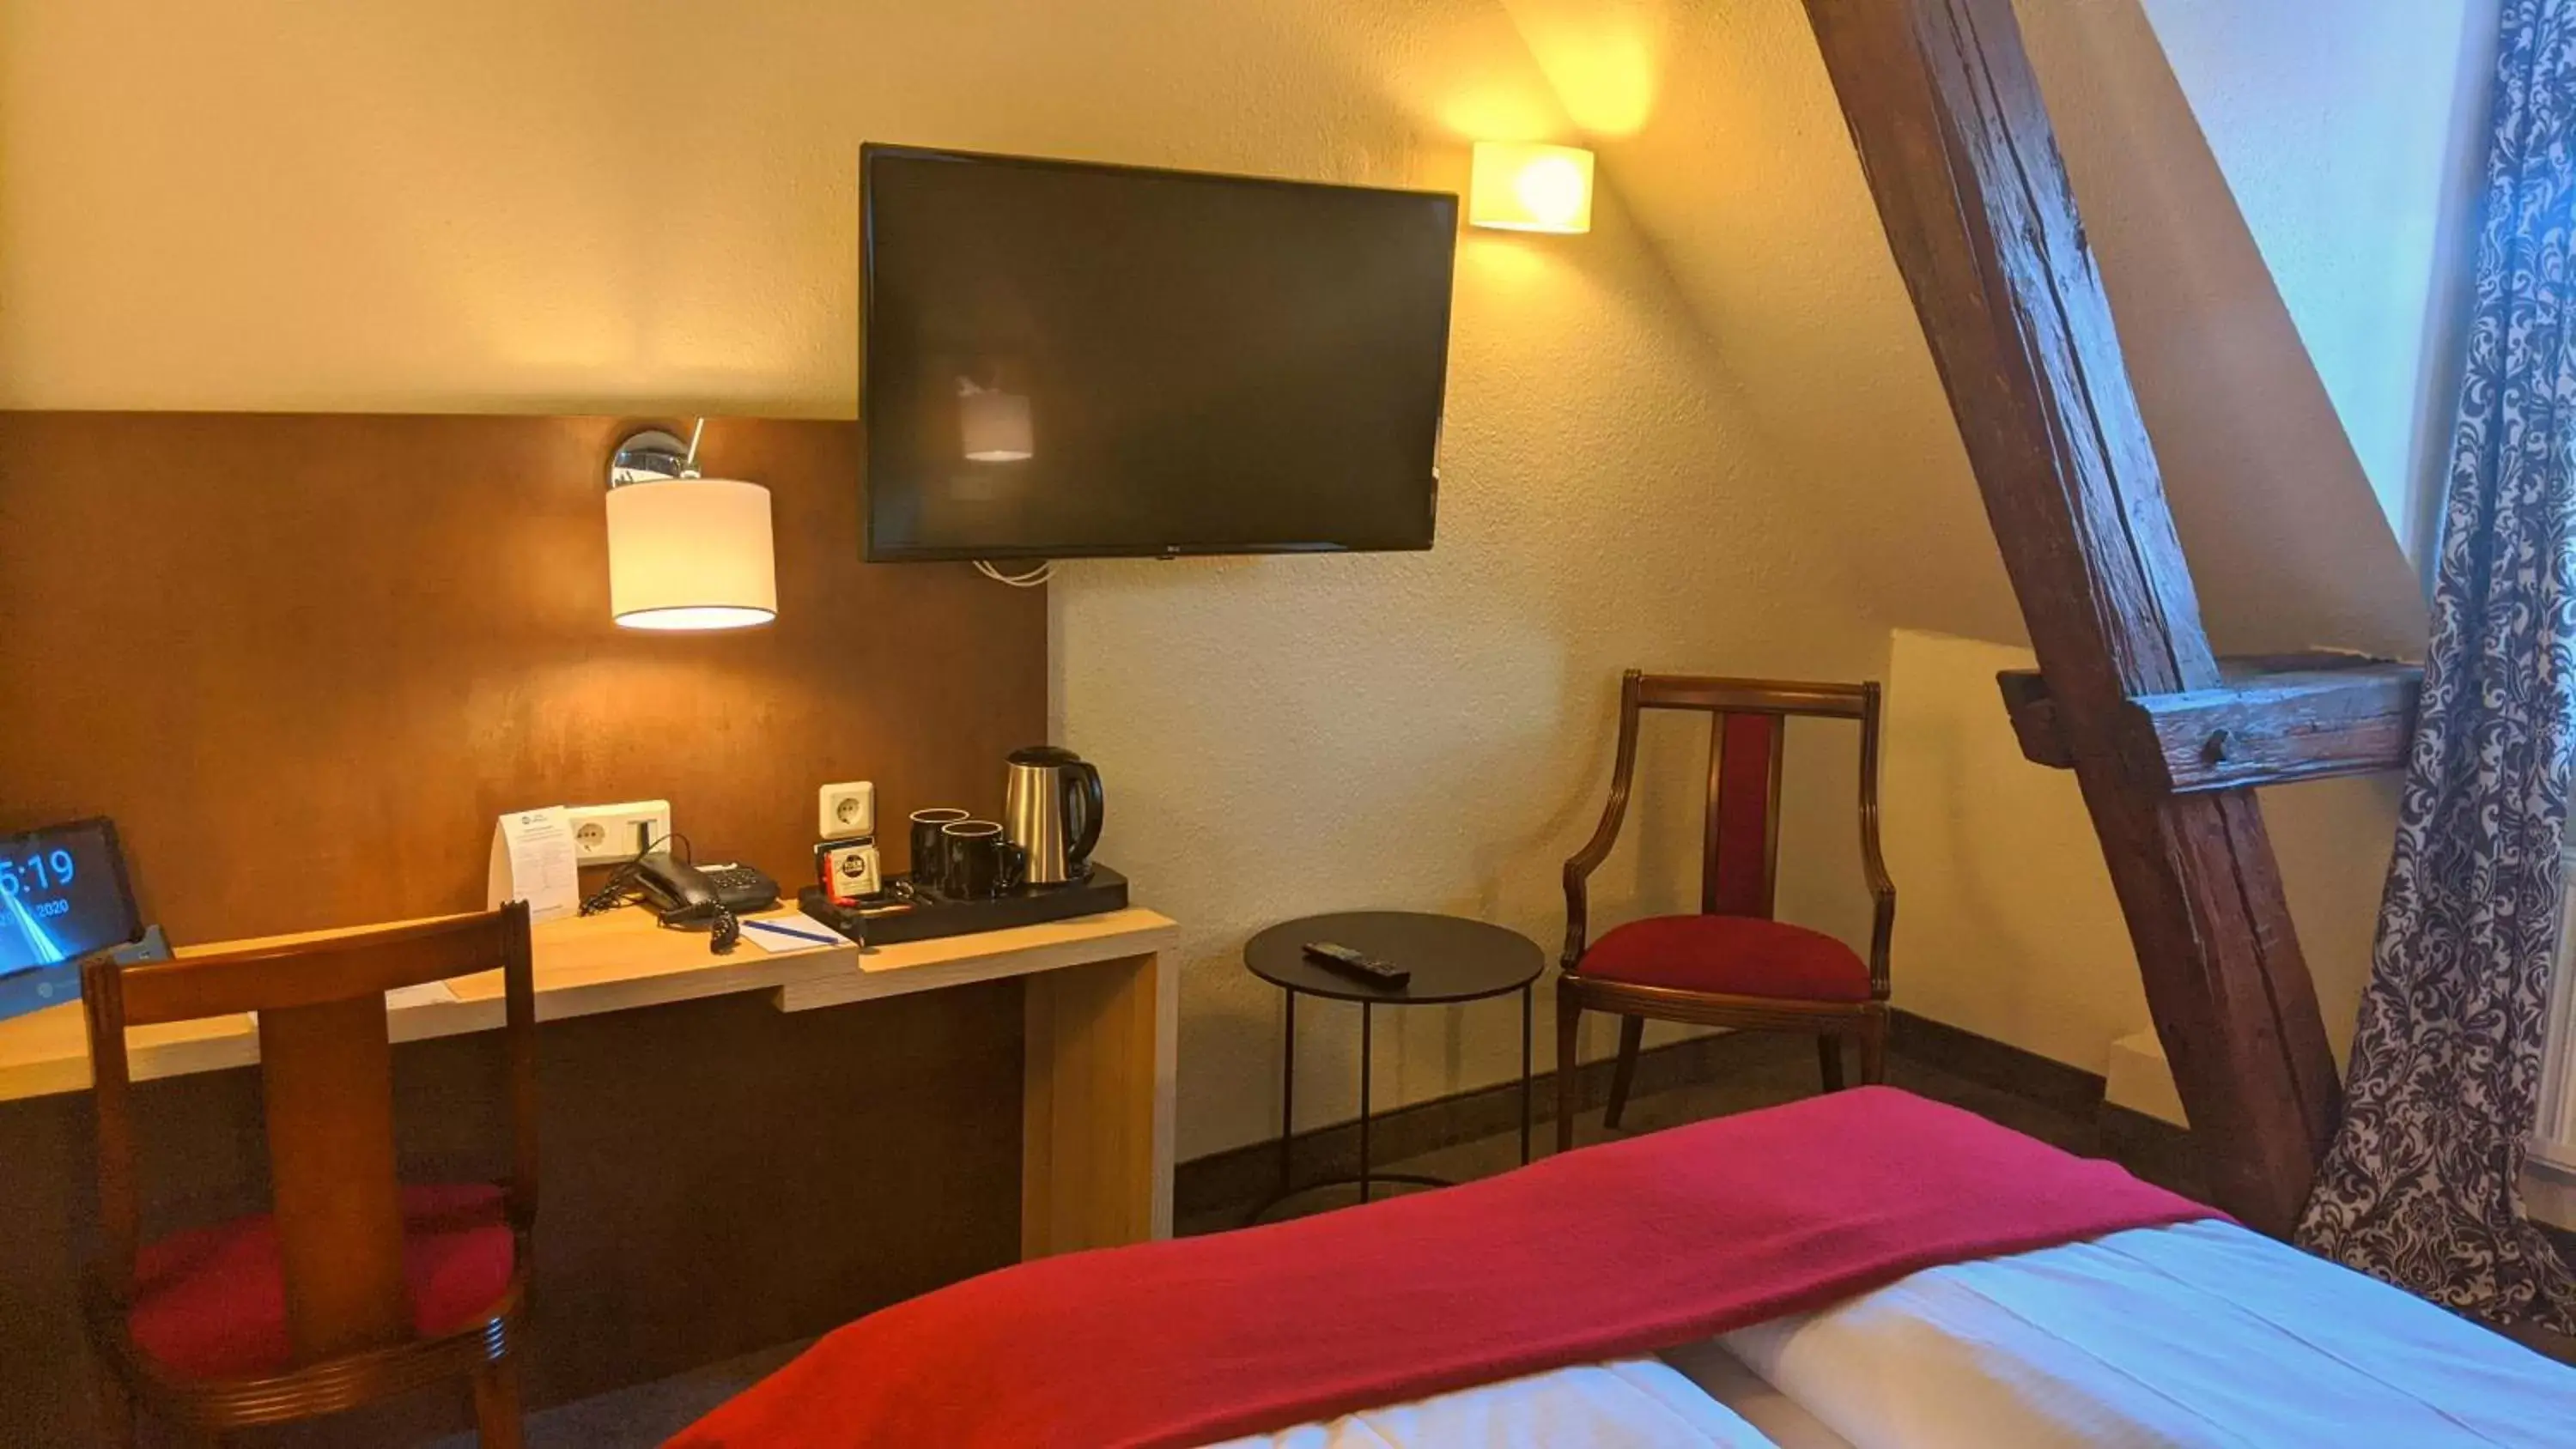 Bed, TV/Entertainment Center in Best Western Hotel Schlossmühle Quedlinburg